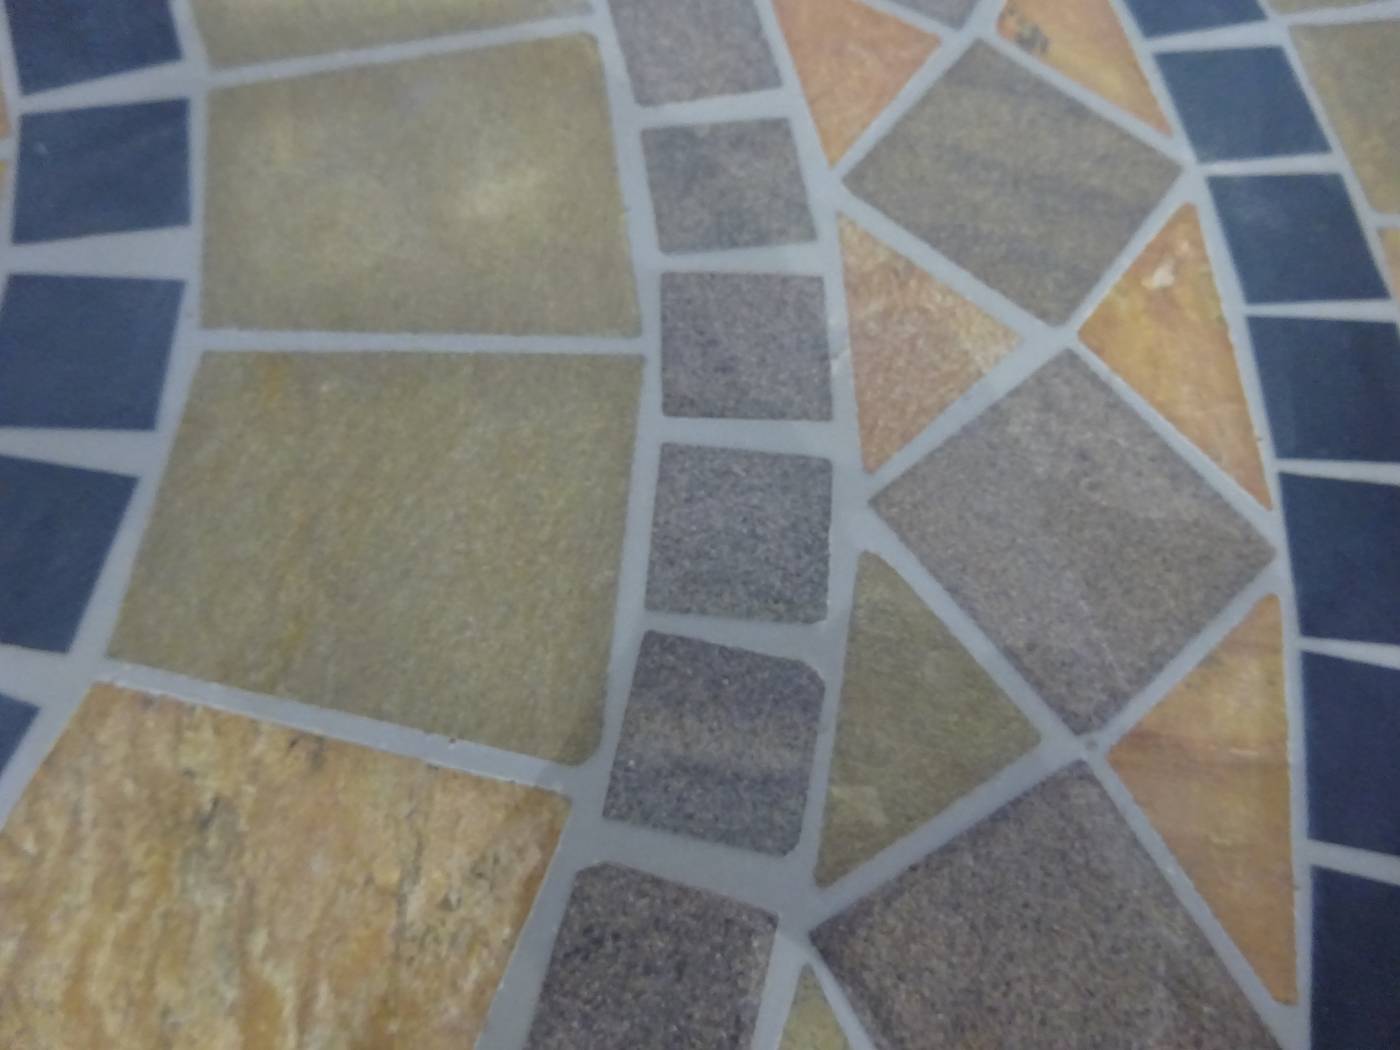 Set Mosaico Leila-Shifa-100-4 - Conjunto de forja color gris: 1 mesa redonda con panel mosaico de marmol  + 4 sillones de forja + 4 cojines